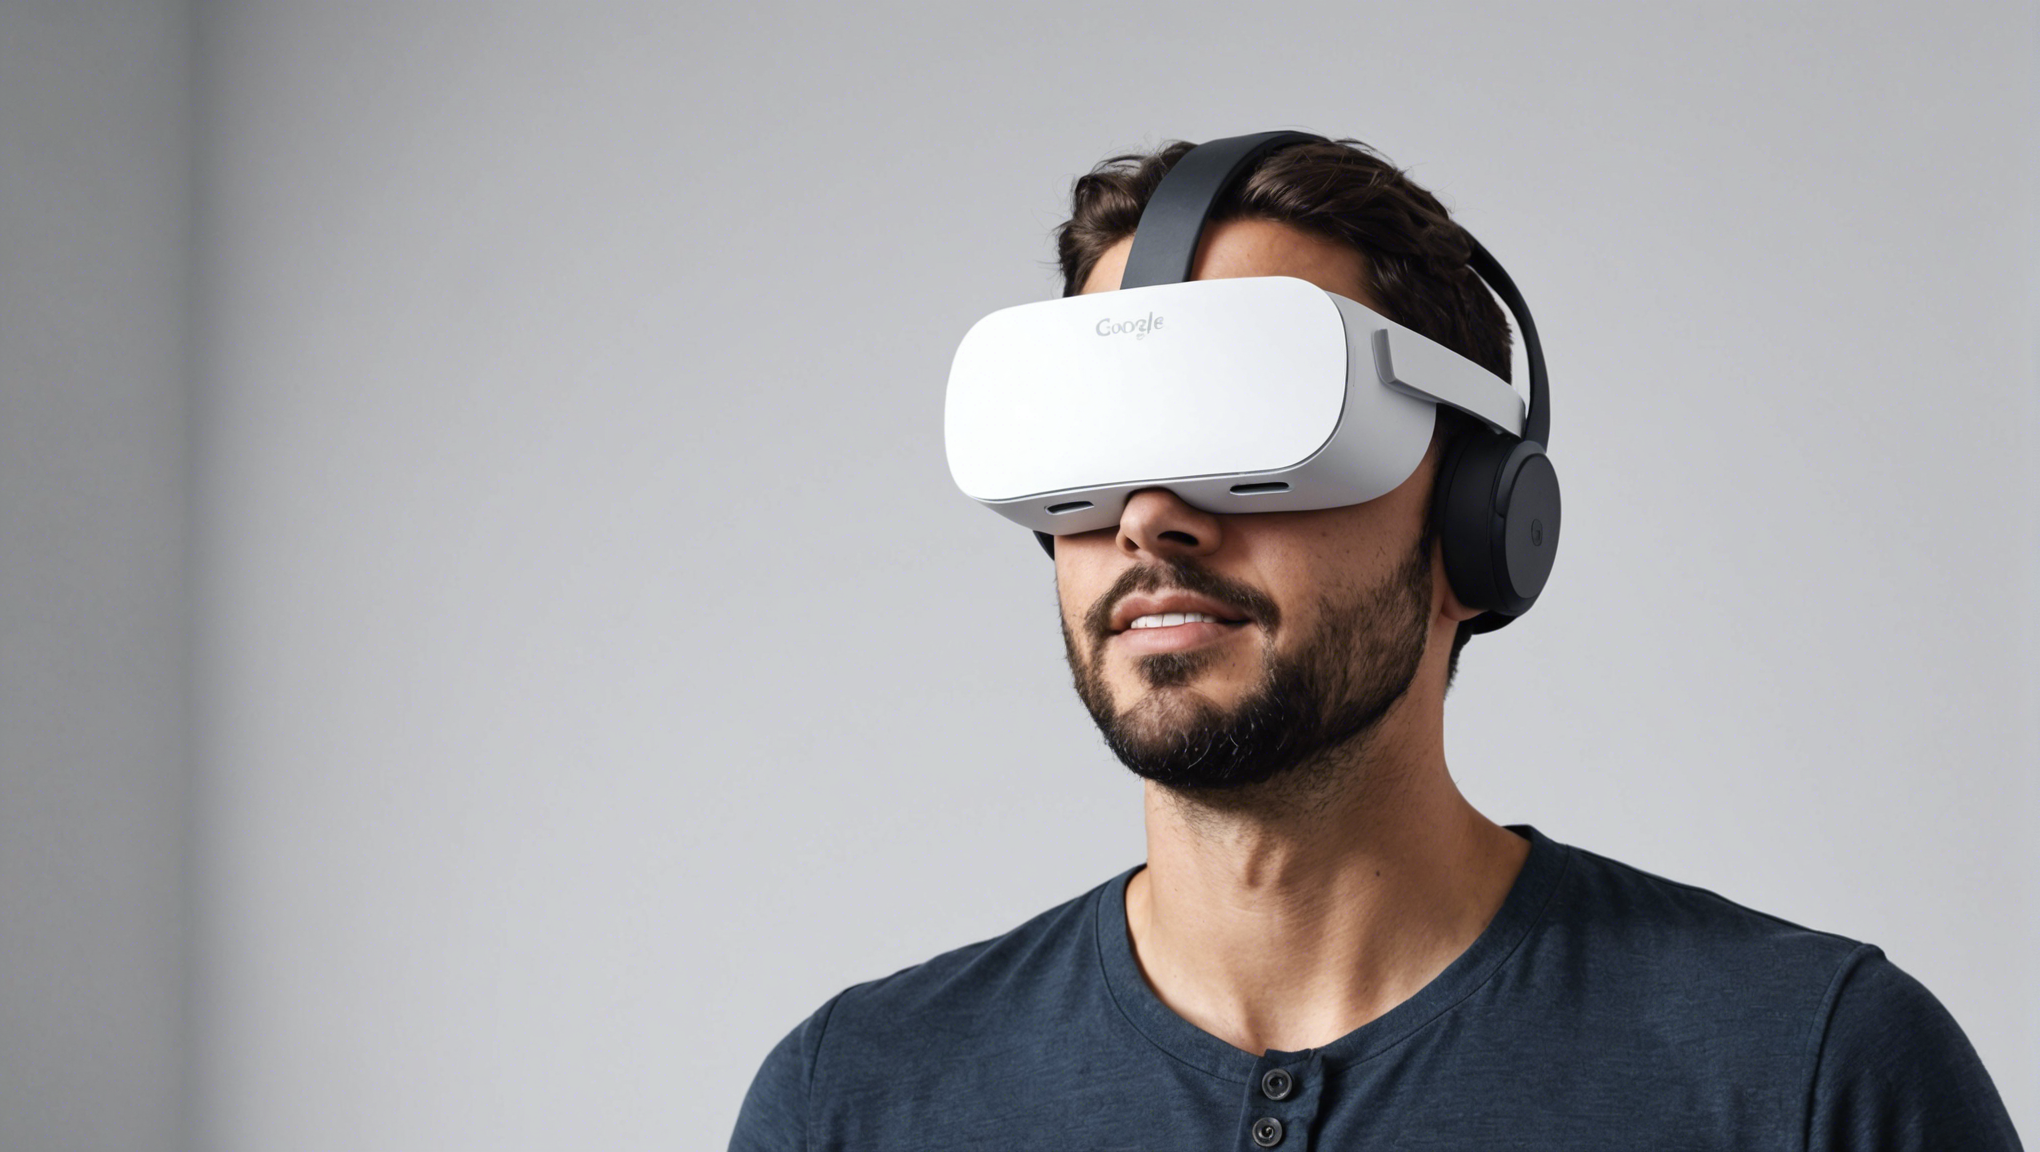 découvrez comment google daydream réinvente la réalité virtuelle avec une expérience immersive exceptionnelle.